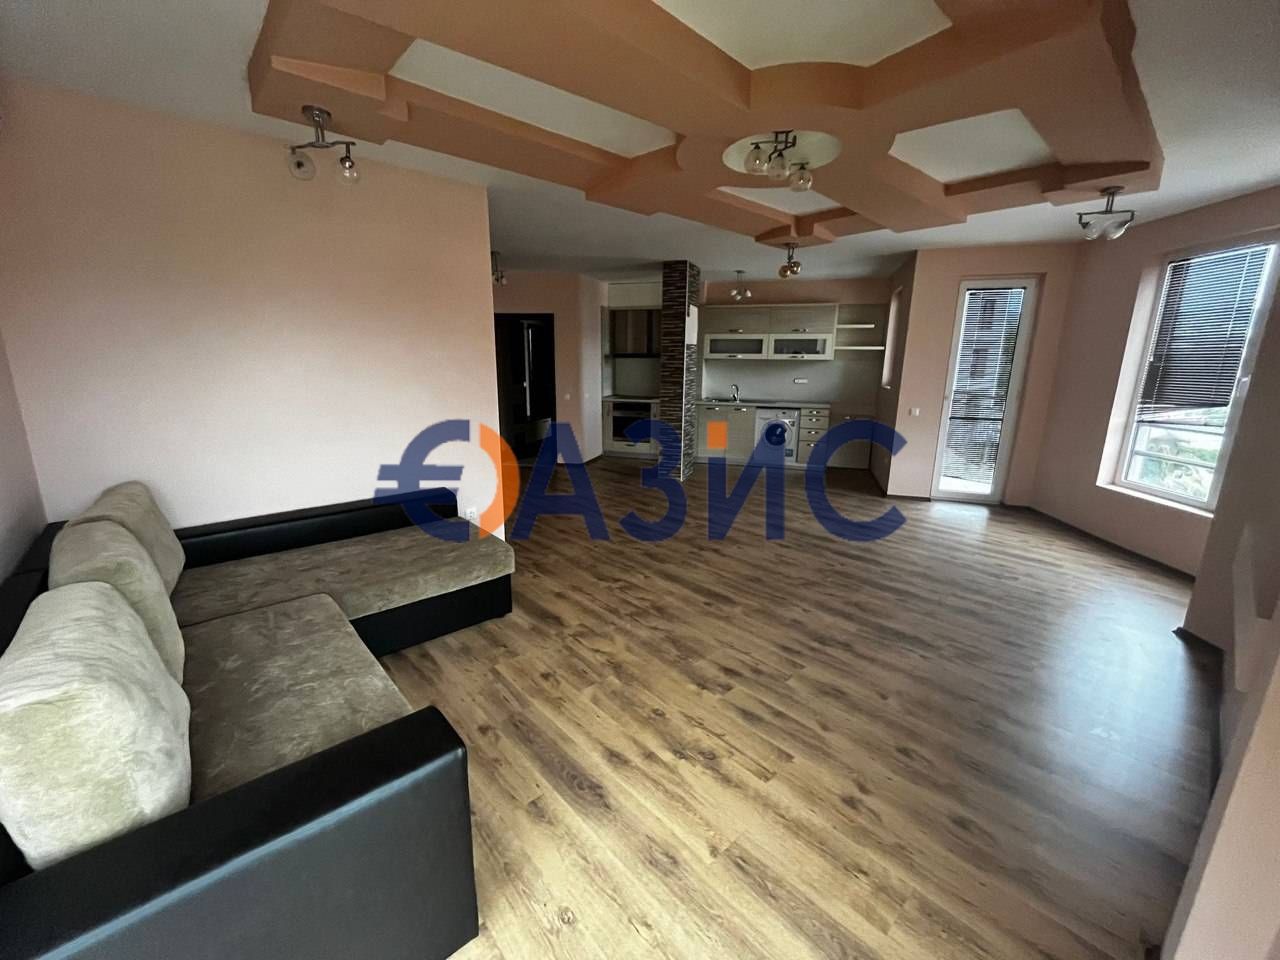 Apartment at Sunny Beach, Bulgaria, 89 sq.m - picture 1